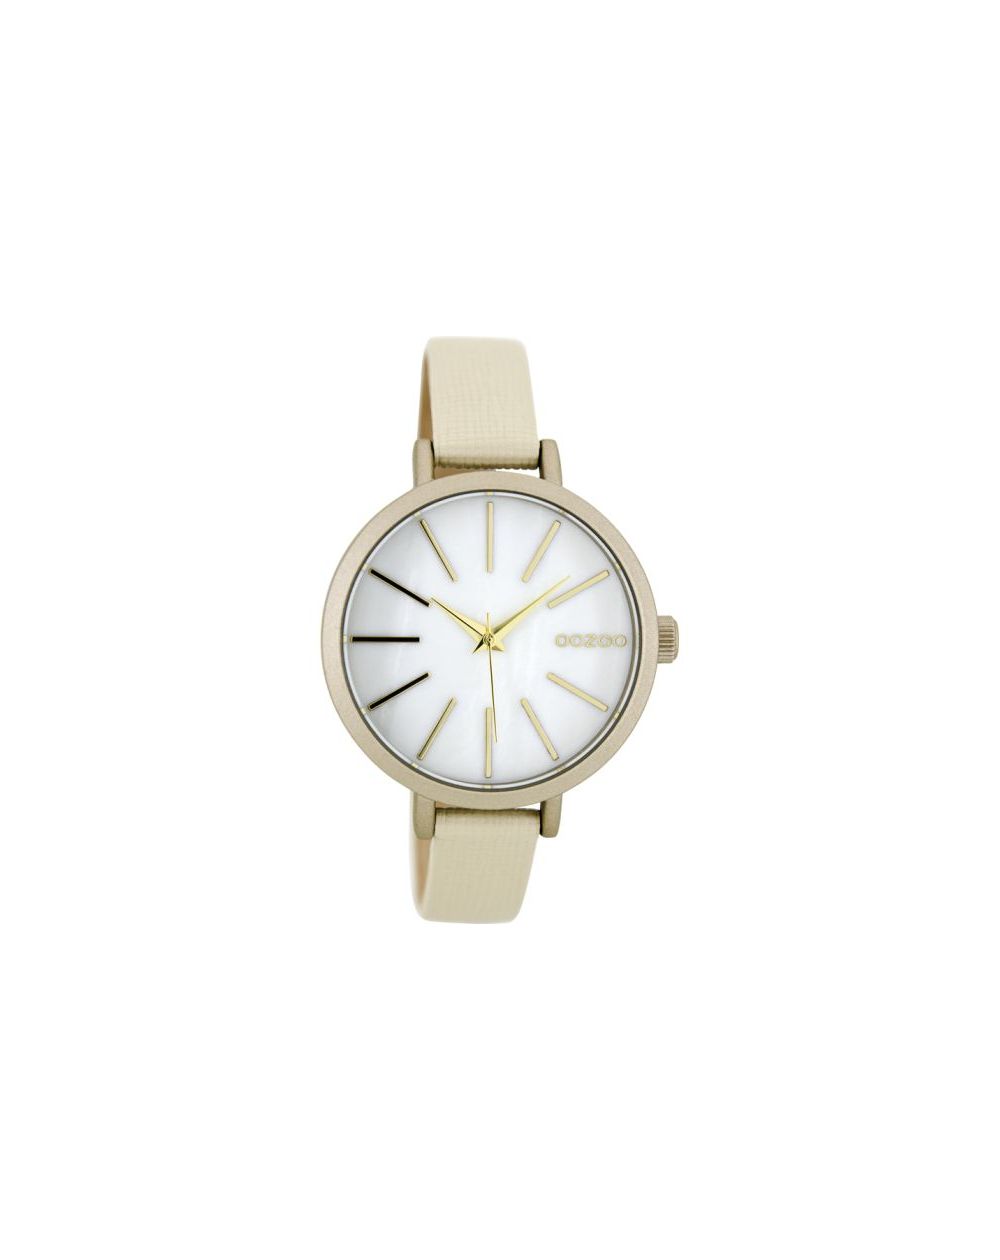 Oozoo montre/watch/horloge C8665